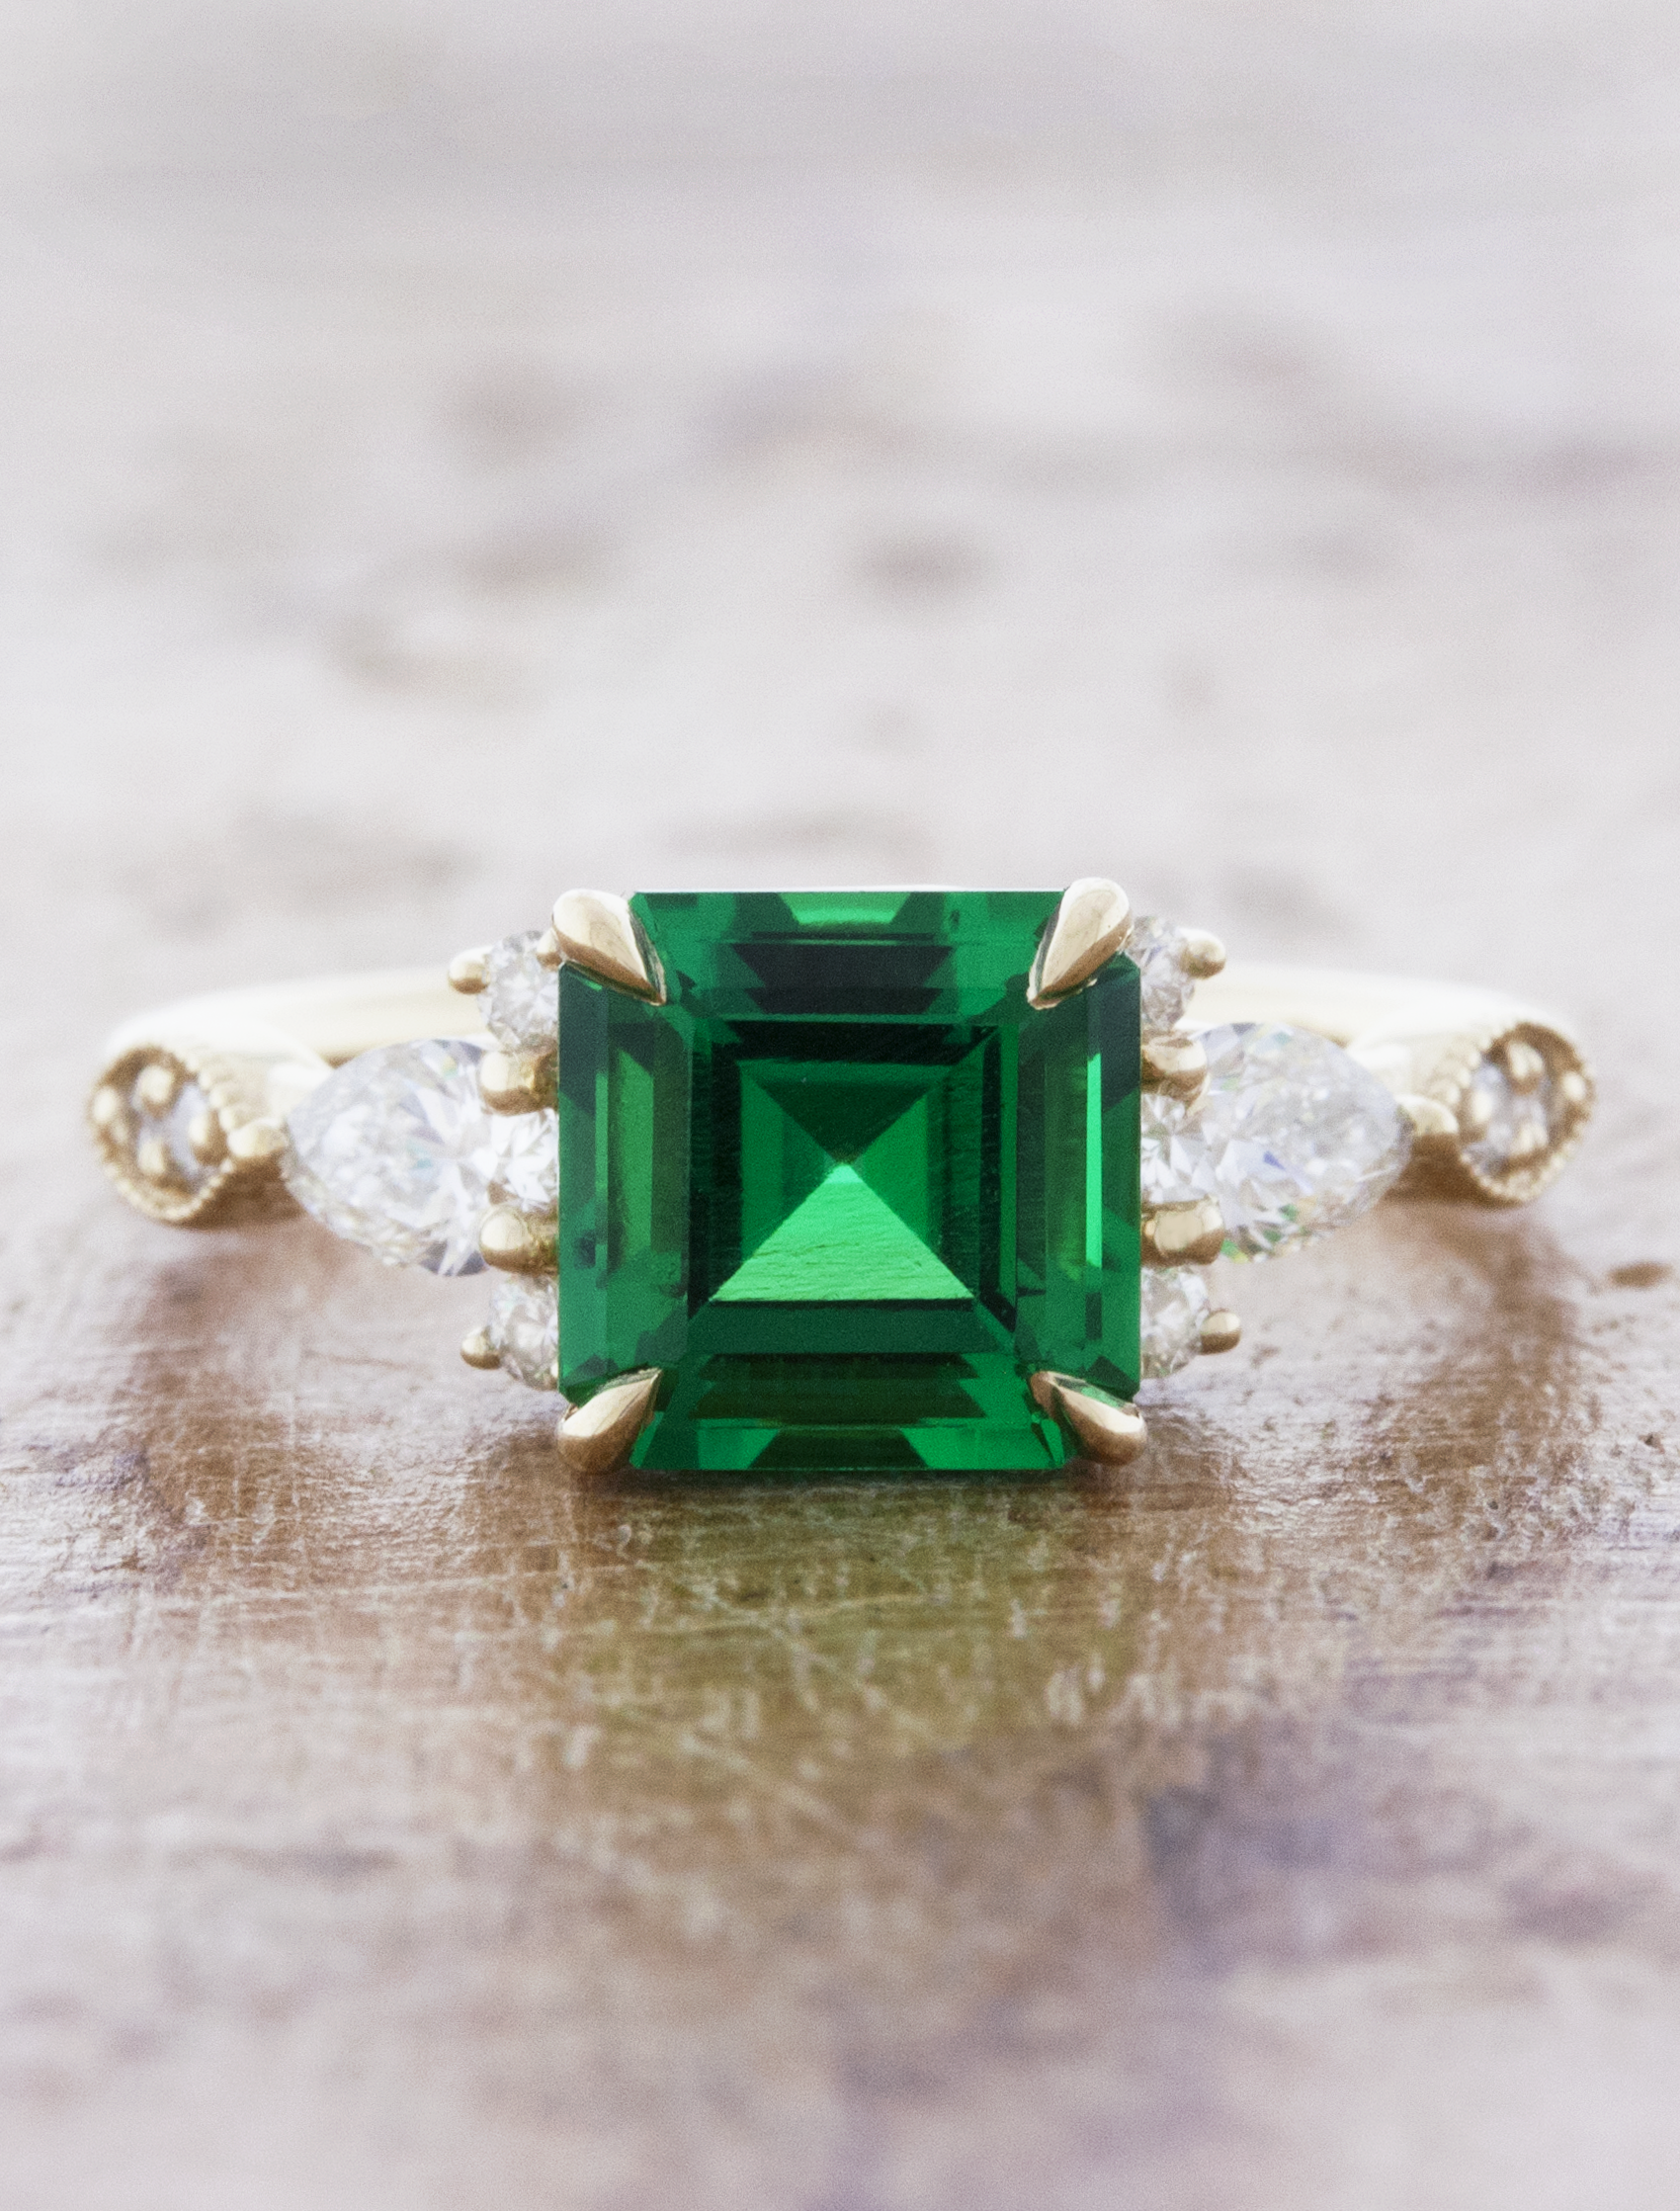 caption:1.5ct asscher cut emerald gem